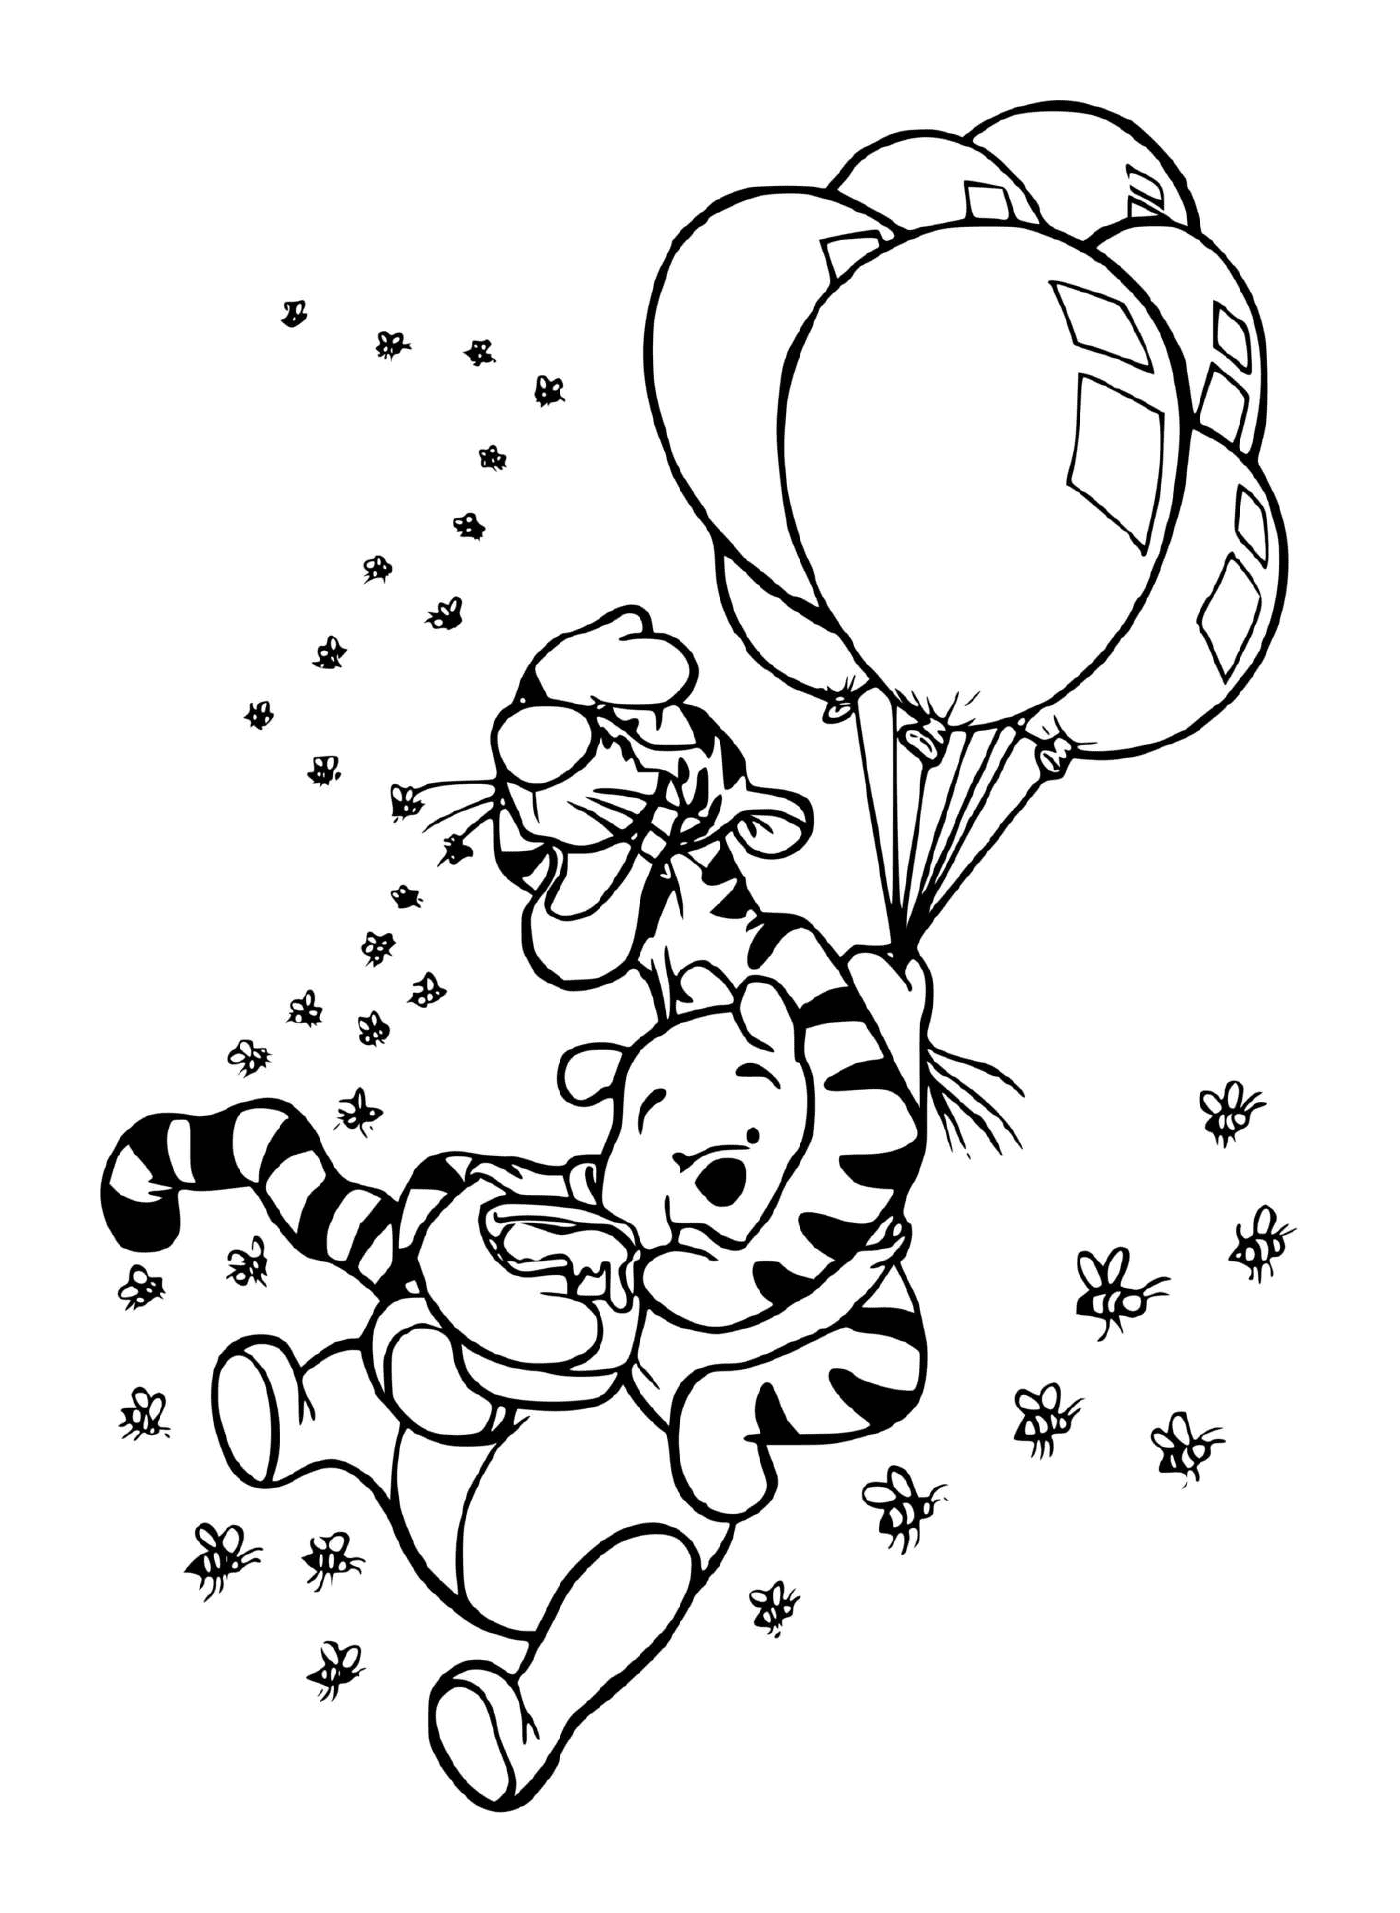  Тигру и Винни в воздухе с шариками и горшком меда 